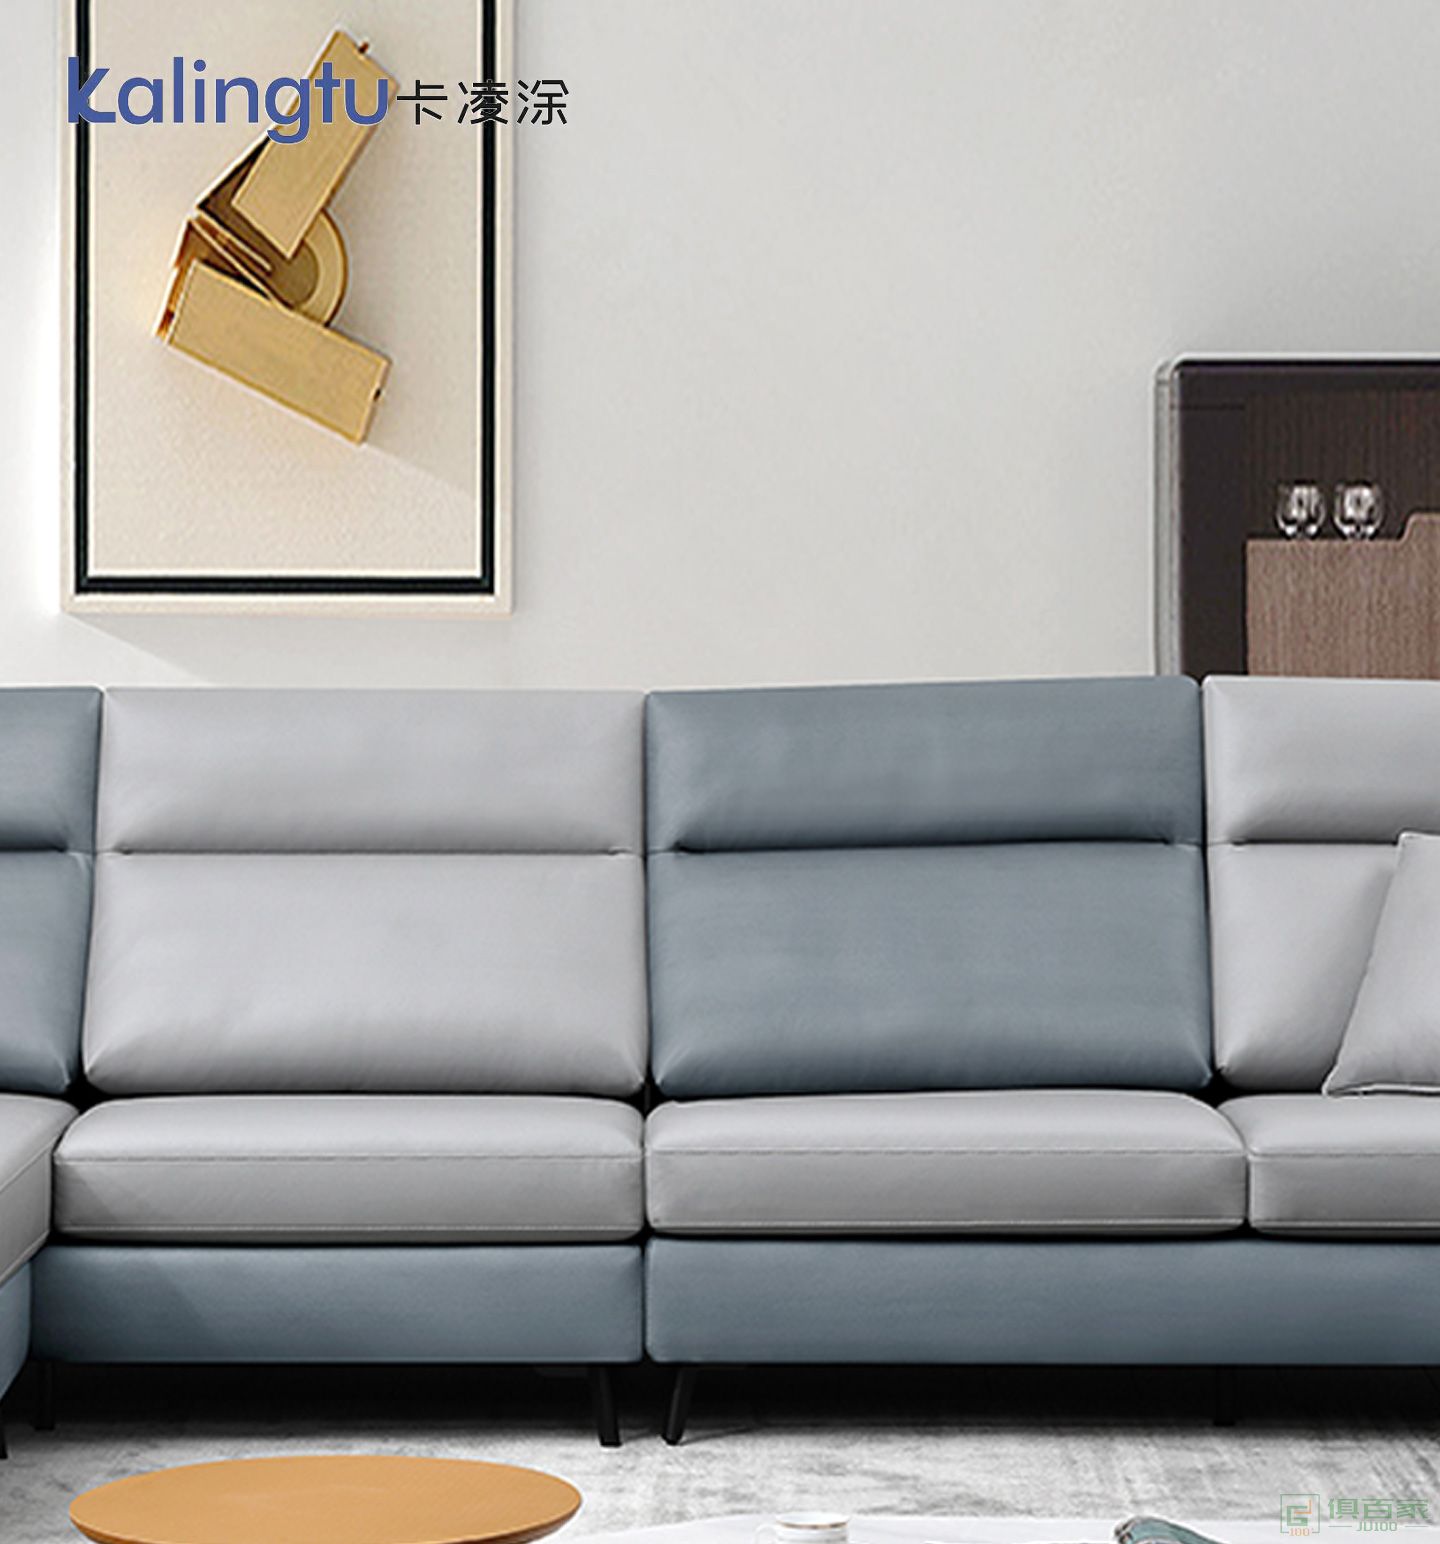 卡凌涂家具民用沙发系列意式极简轻奢科技布沙发